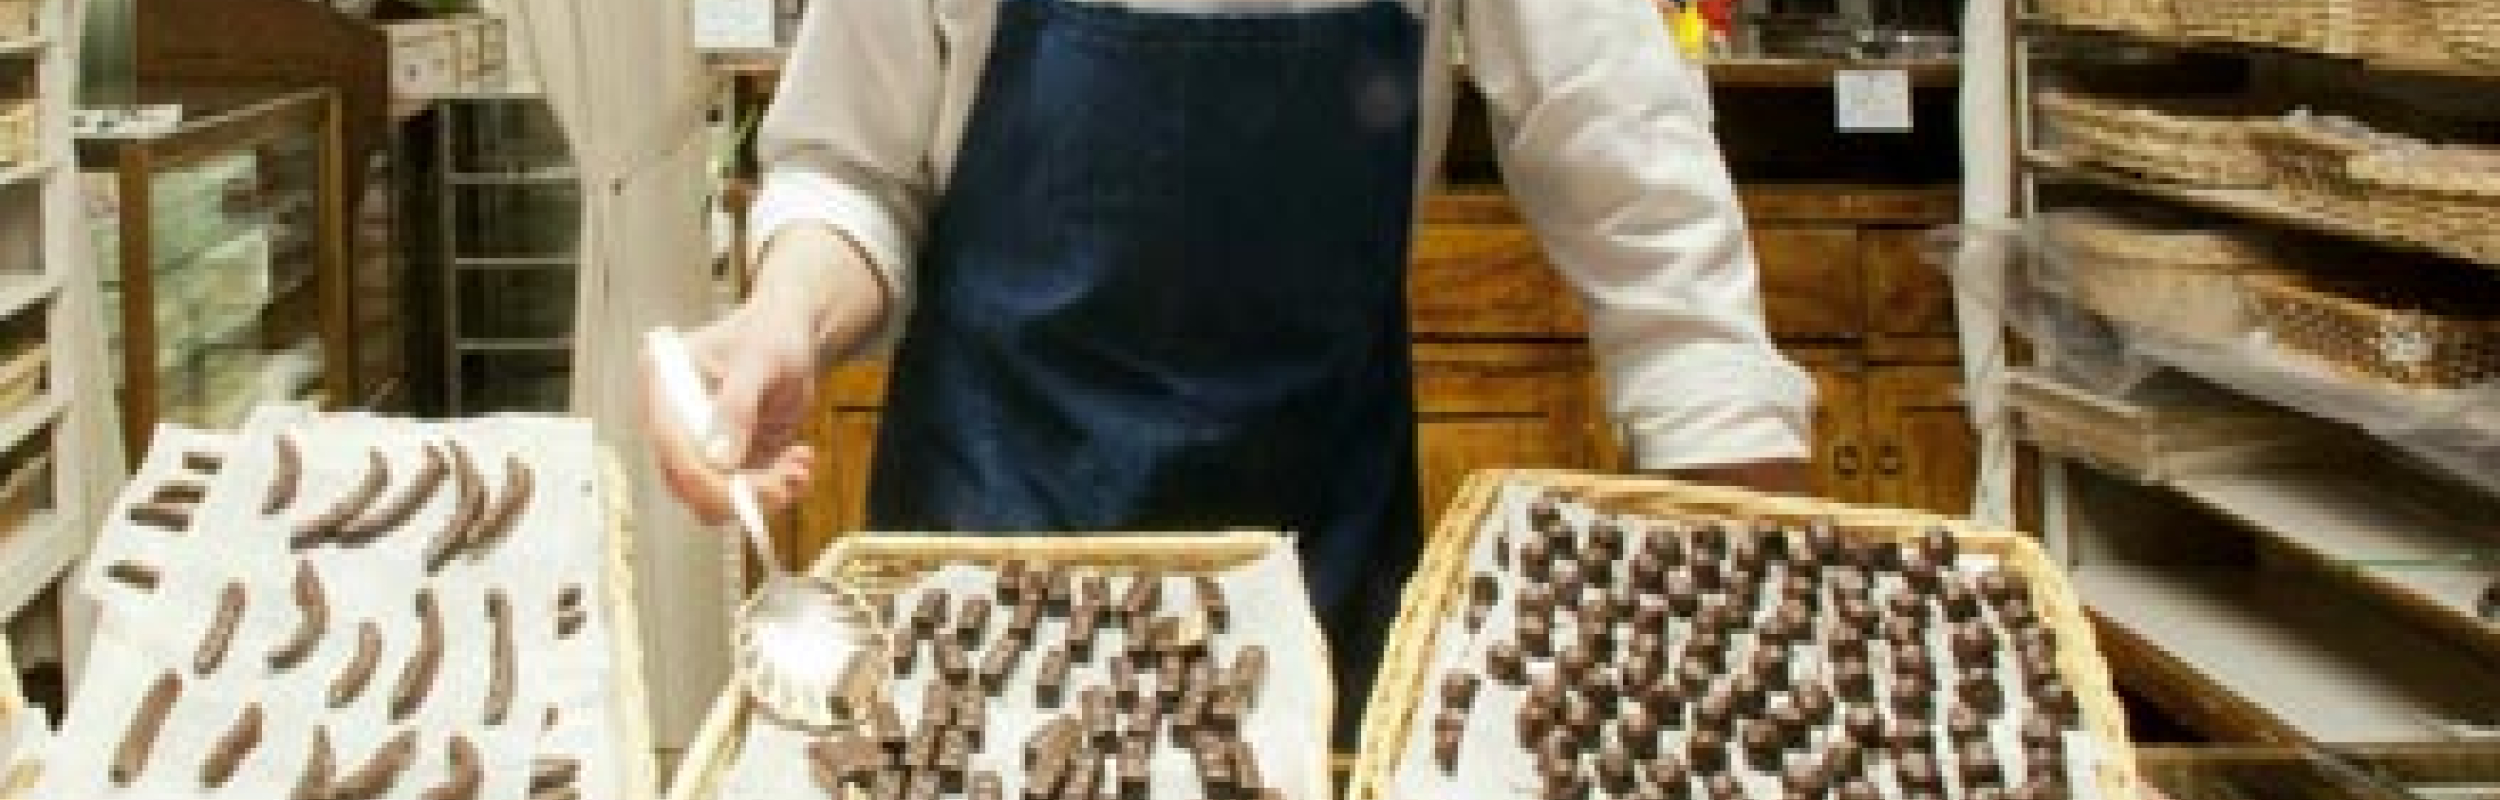 romeo-viganotti-cioccolato-big